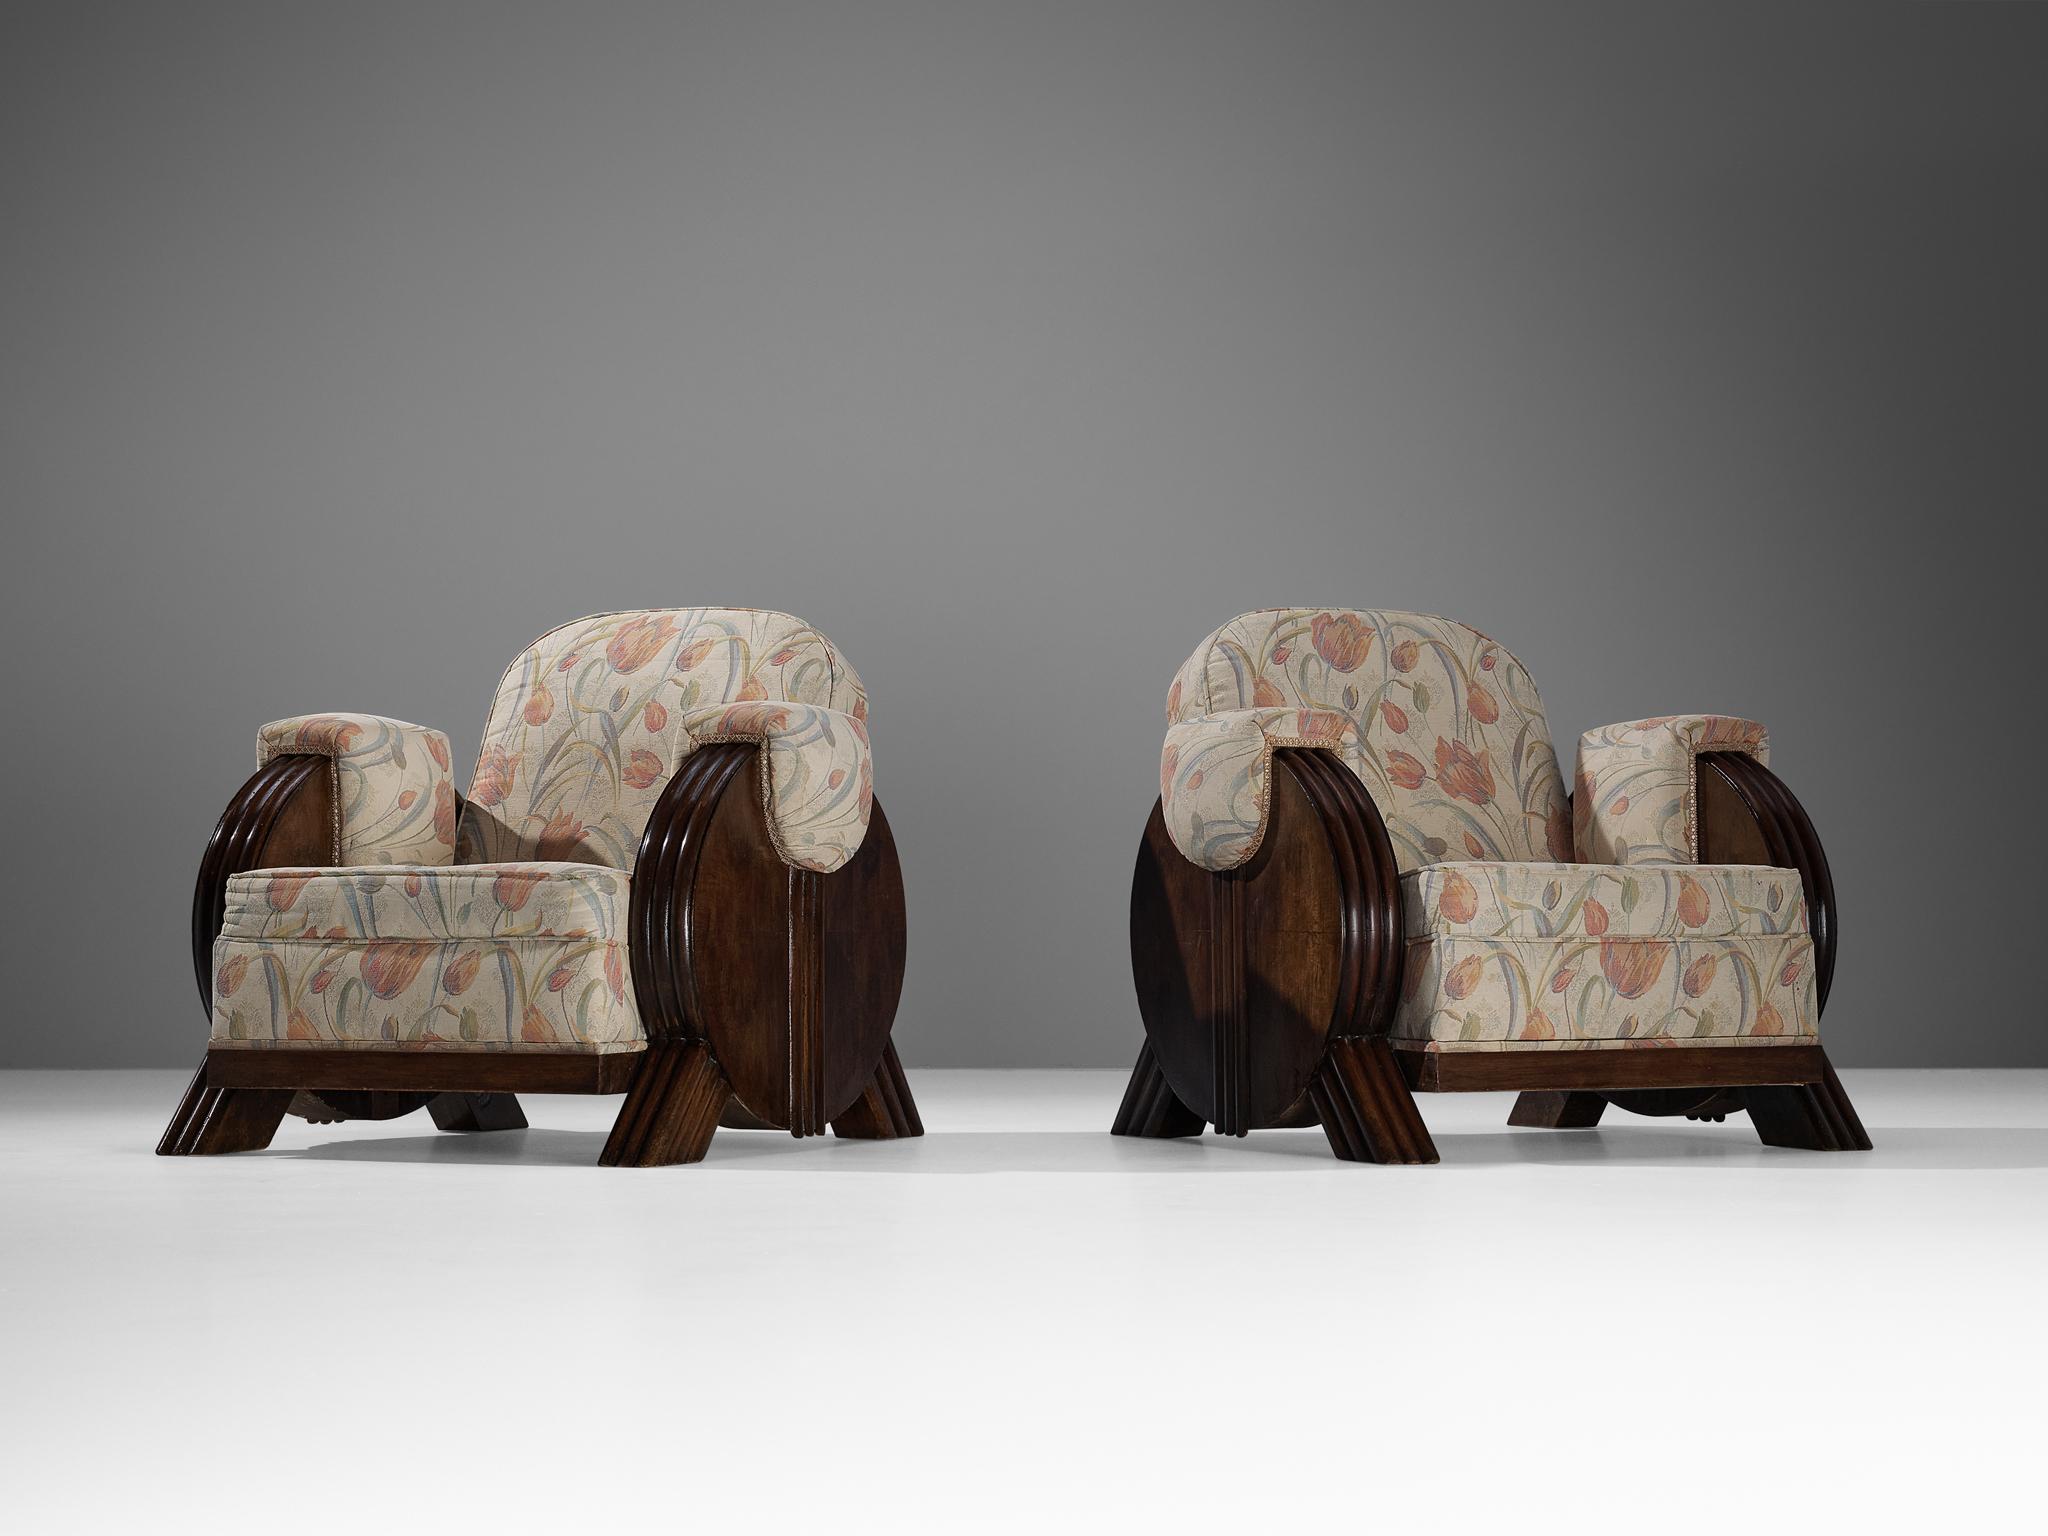 Paire de fauteuils, tissu, hêtre teinté, laiton, Europe, années 1940.

Ces fauteuils respirent le style Art déco des années 1940. Avec ses formes imposantes, ce design mérite une place de choix dans un intérieur. Ce qui est vraiment exceptionnel